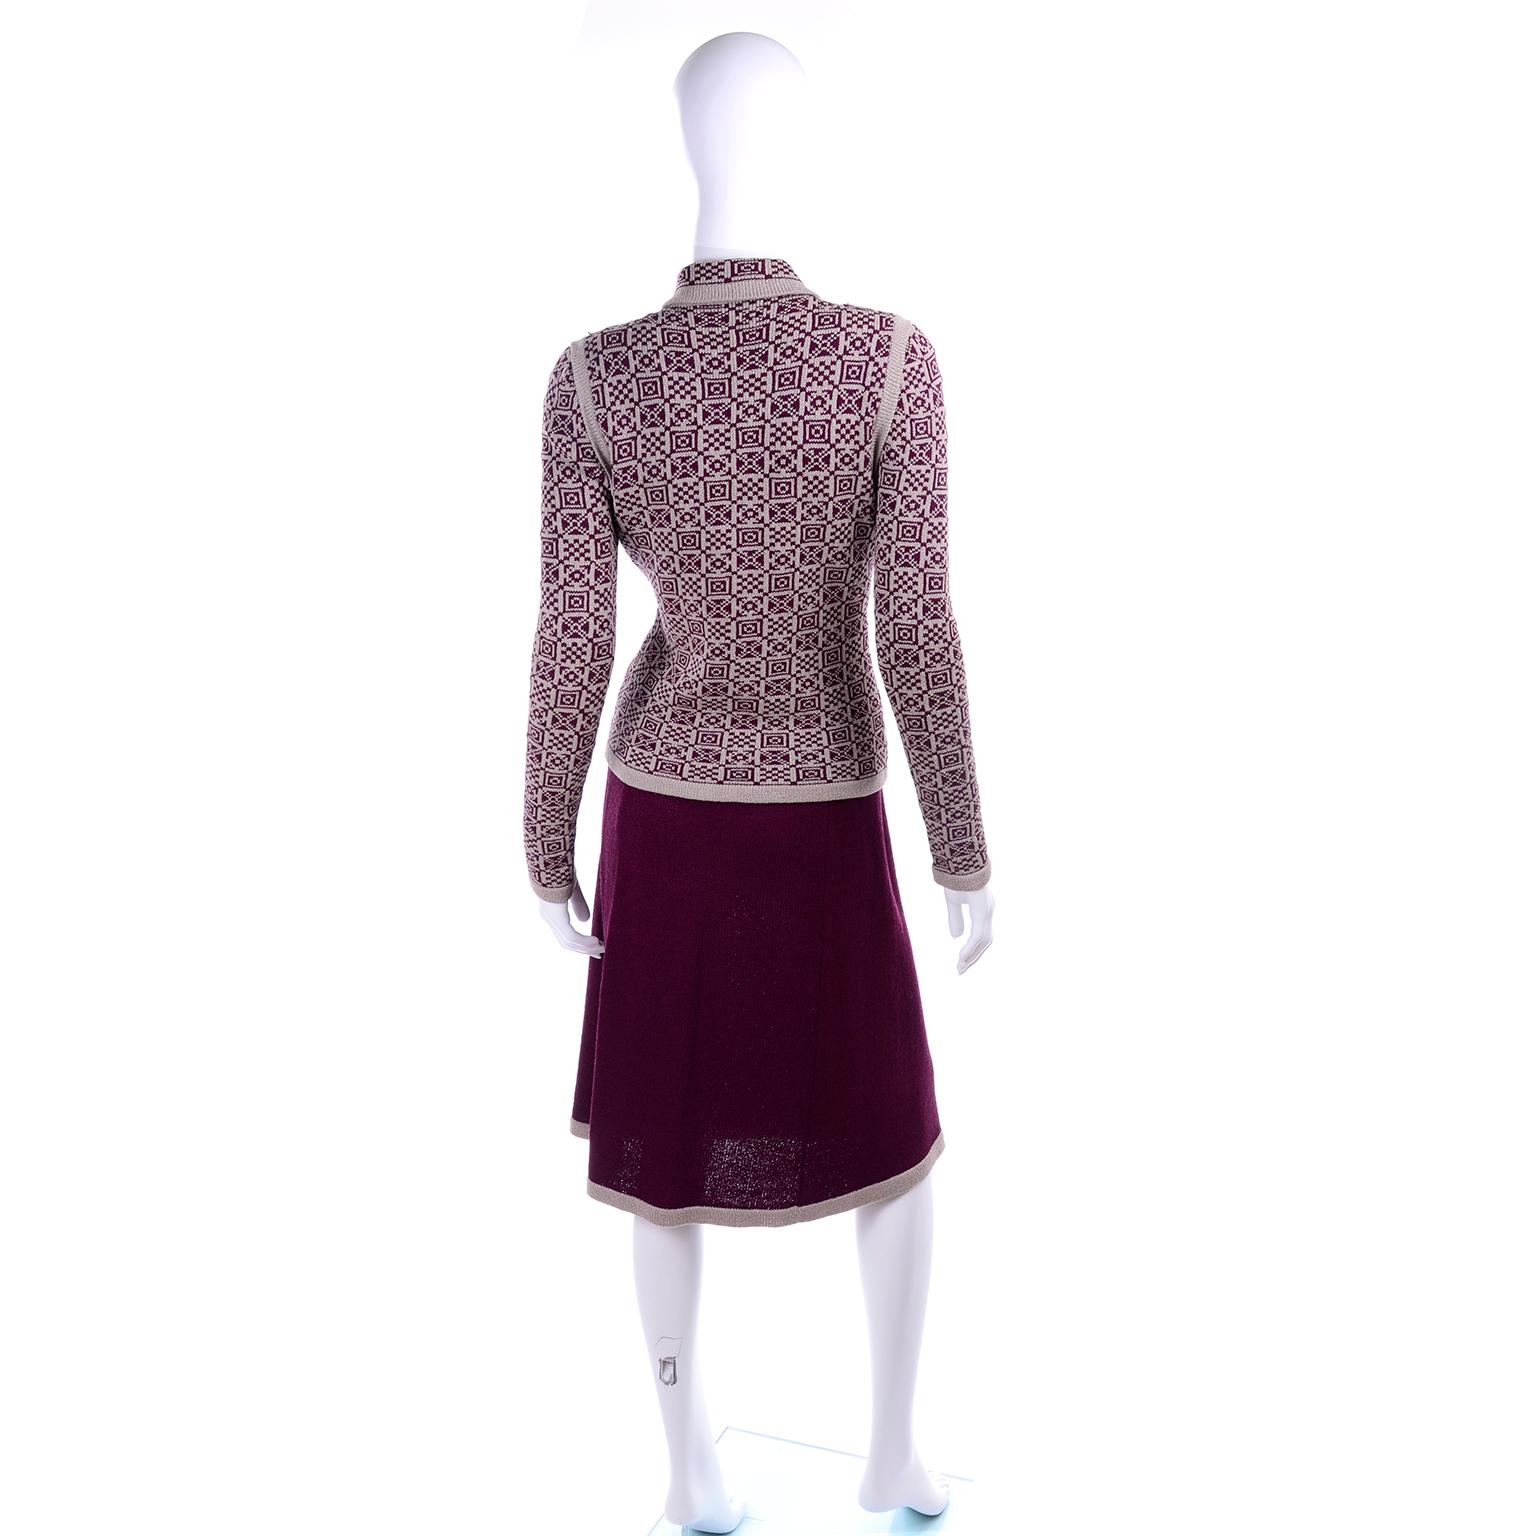 Women's 1970s Adolfo Suit 2 pc Skirt & Tank Dress W Bow Cardigan Jacket in Burgundy Knit